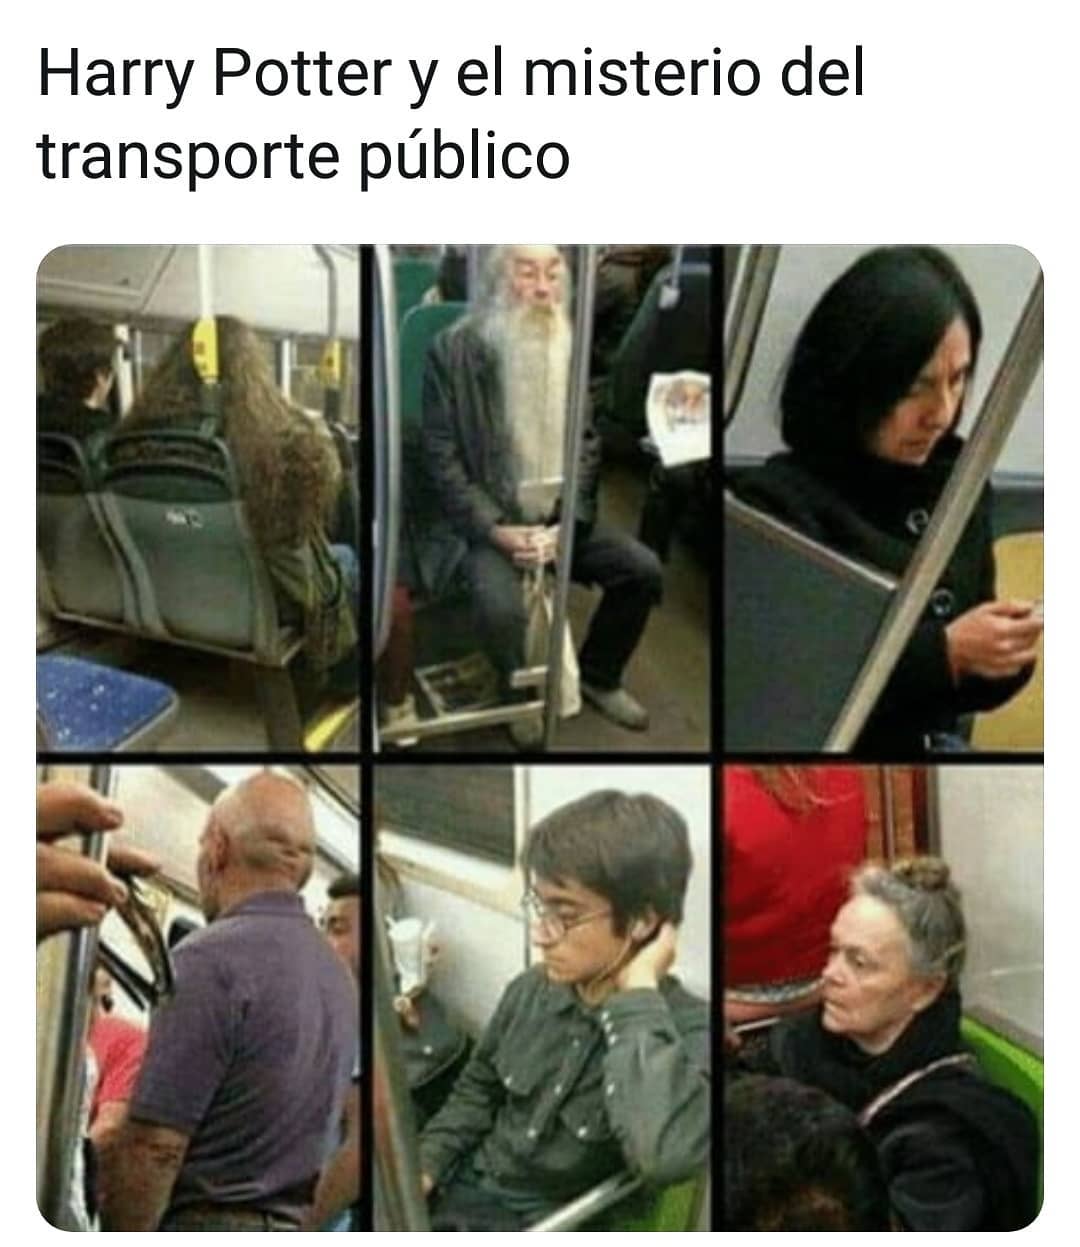 Harry Potter y el misterio del transporte público.